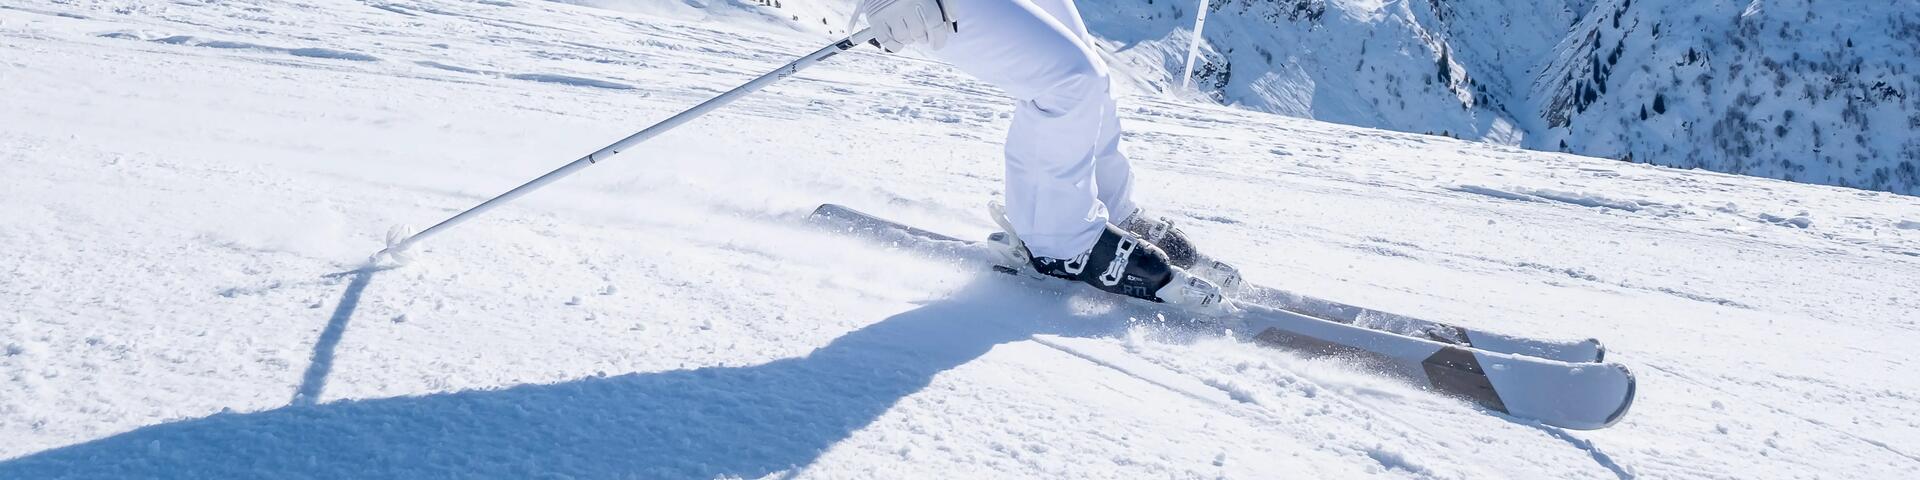 Tailles des bottes de ski : comment choisir?